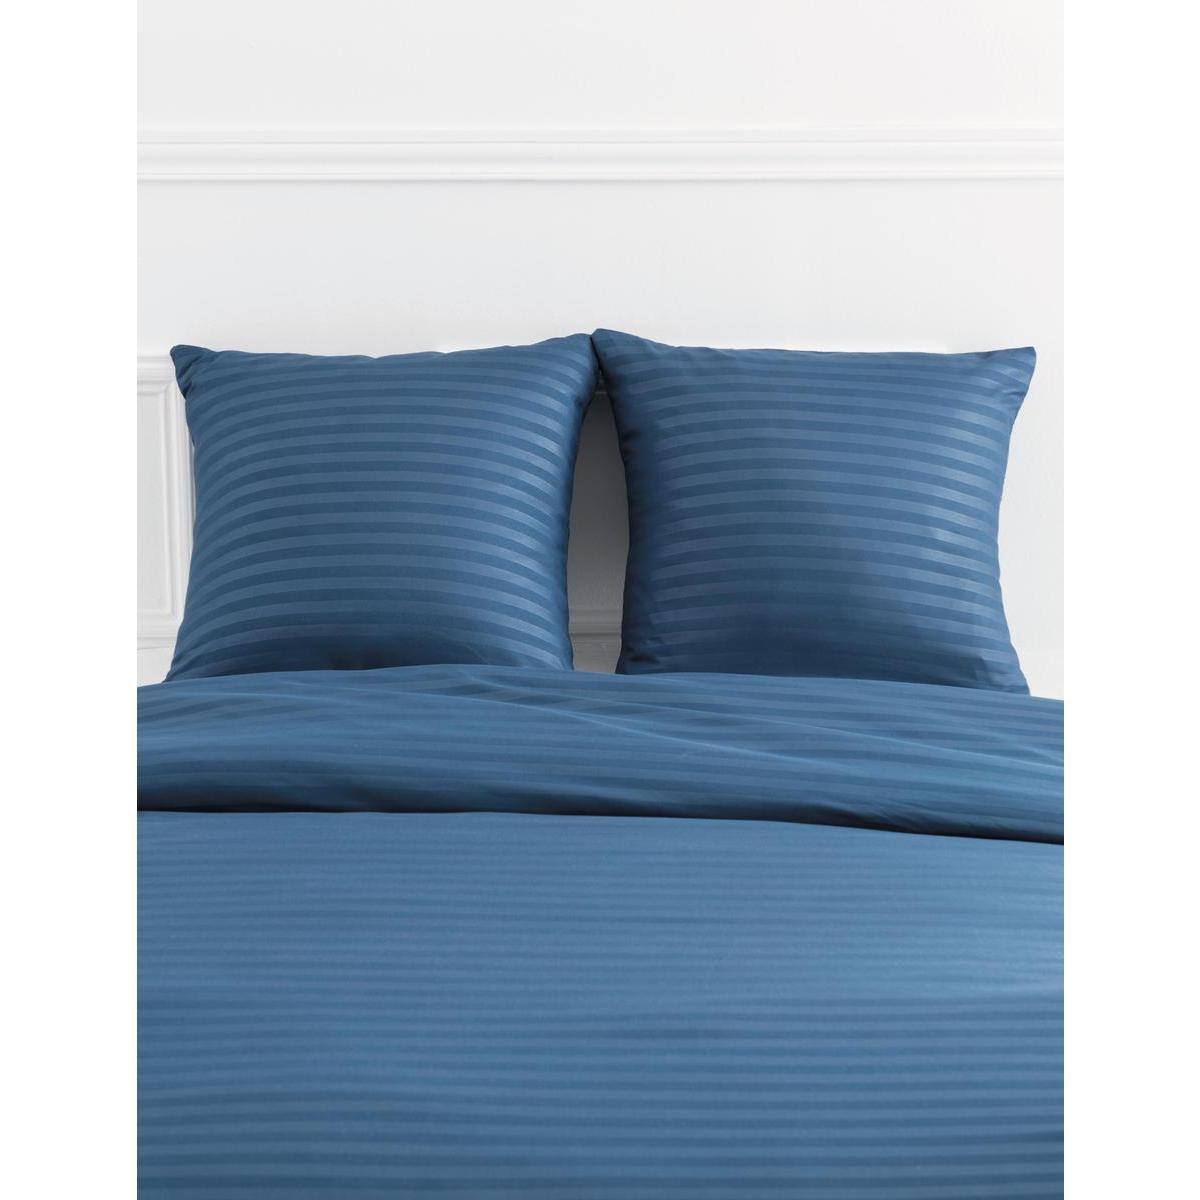 Parure de lit rayée - L 240 x l 220 cm - Différents modèles - Bleu - K.KOON